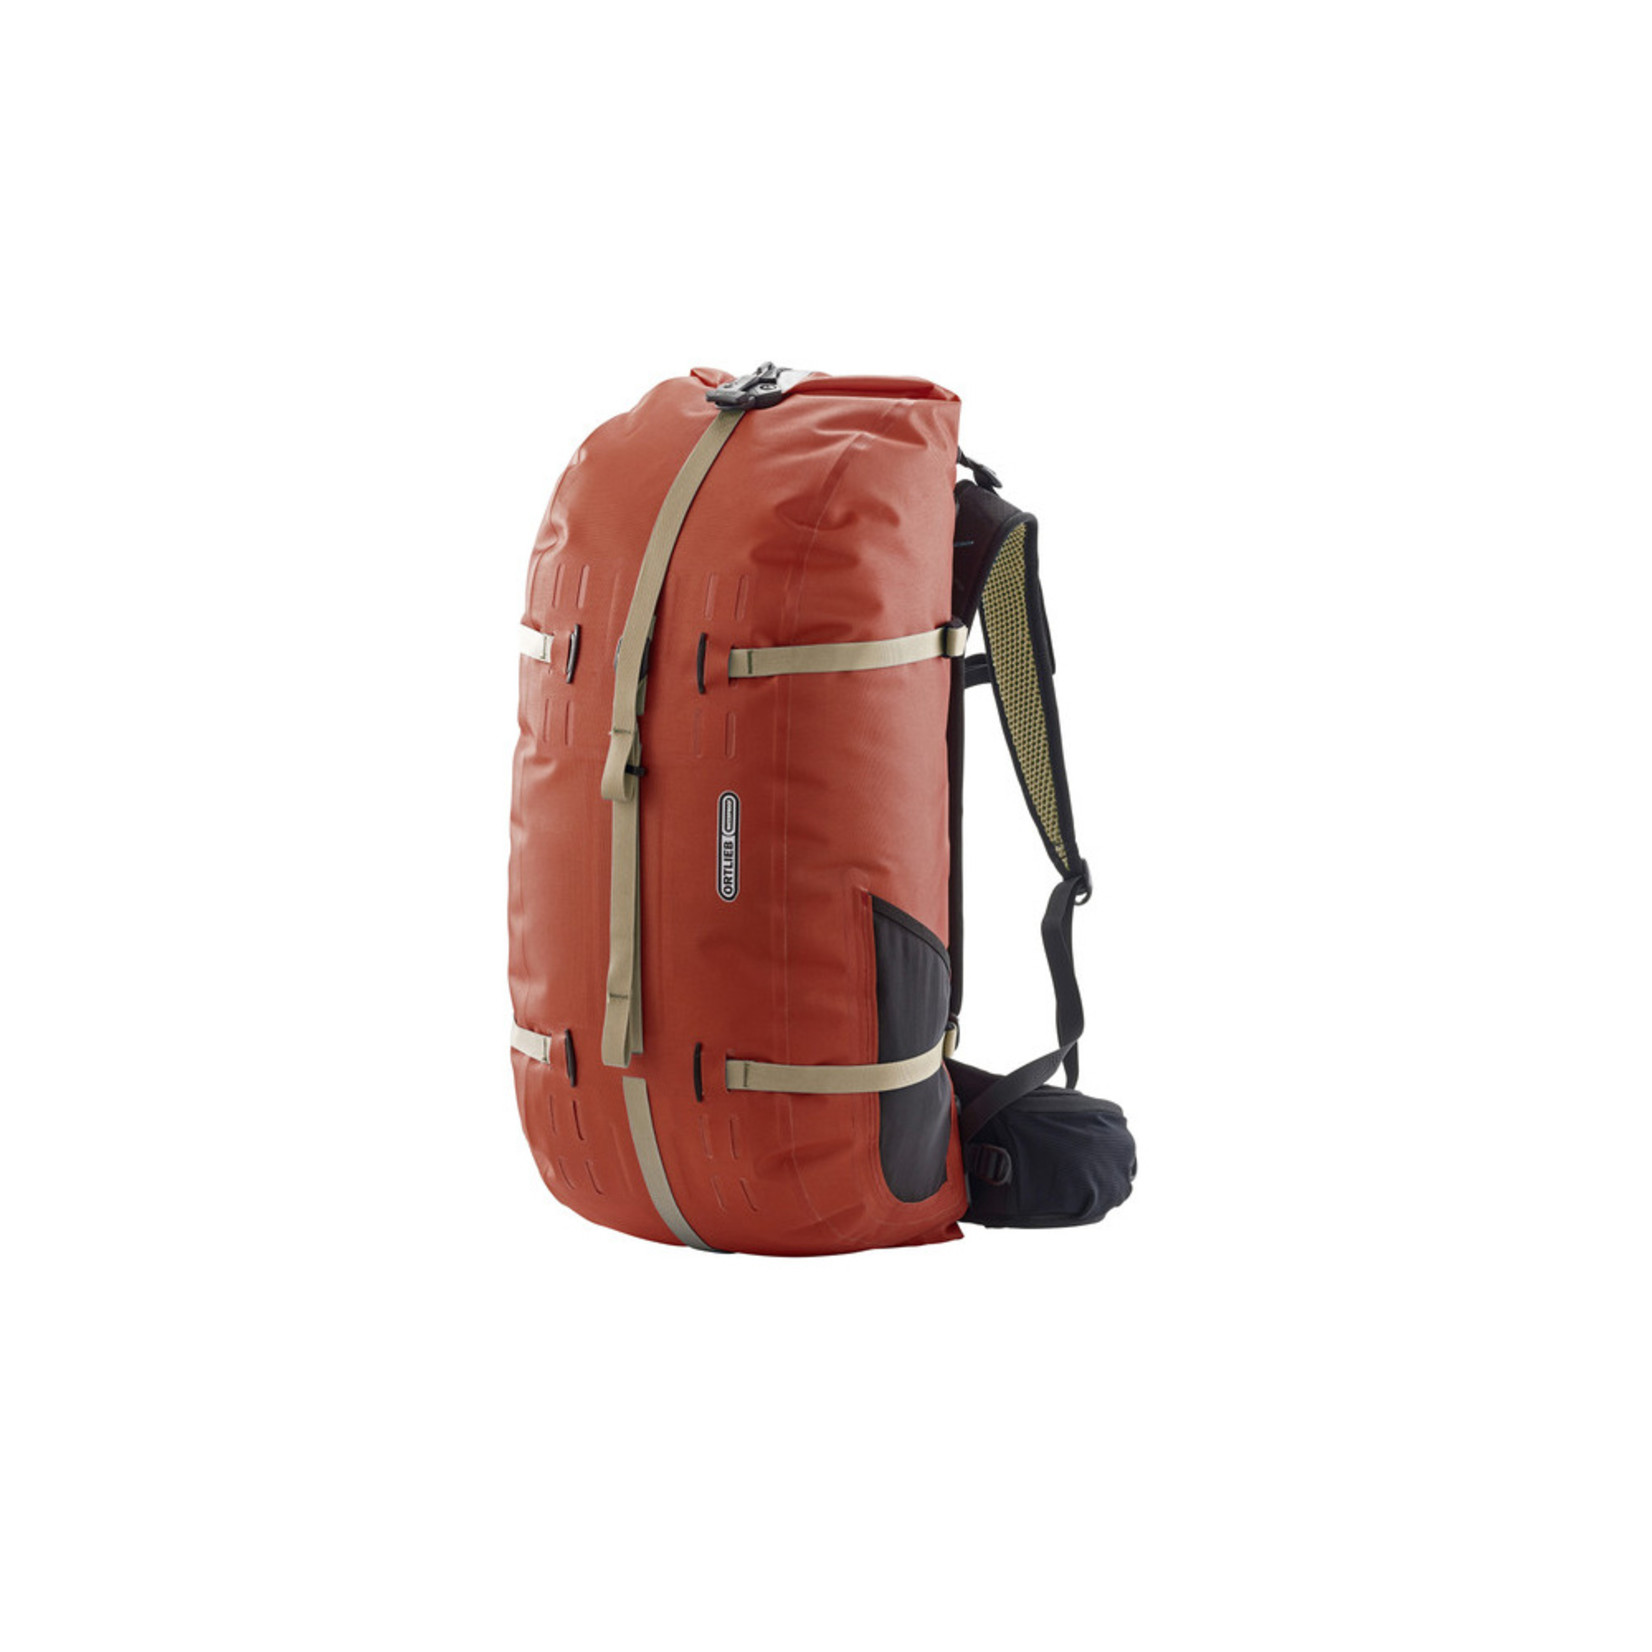 Ortlieb Ortlieb Atrack Backpack Bag R7105 - 45L Rooibos